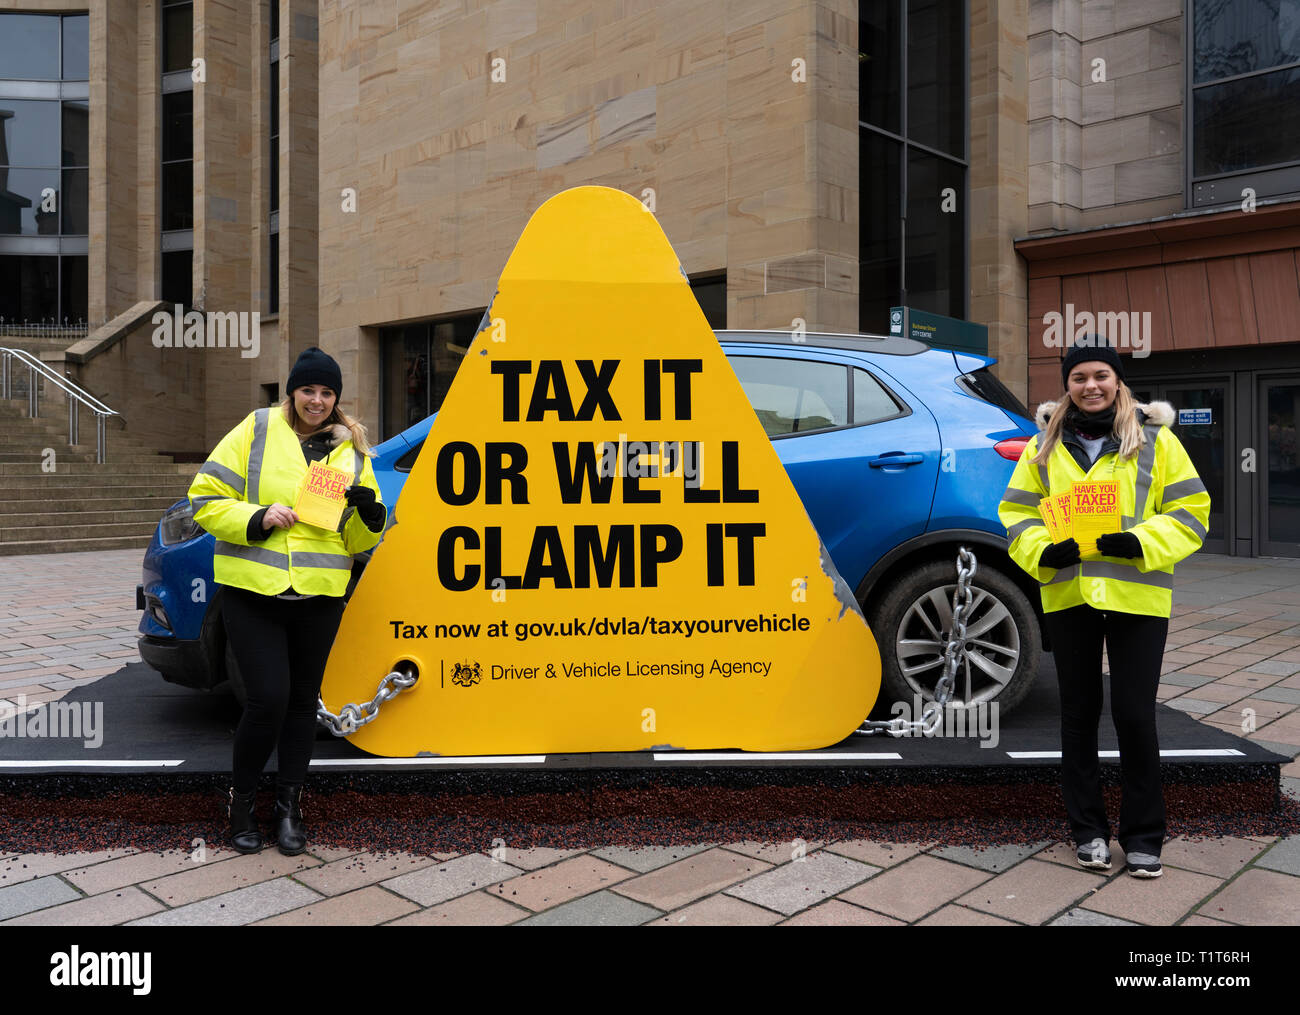 DVLA ( Driver & Vehicle Licensing Agency) campagne publique pour promouvoir la taxe sur les voitures dans le centre de Glasgow, Écosse, Royaume-Uni Banque D'Images